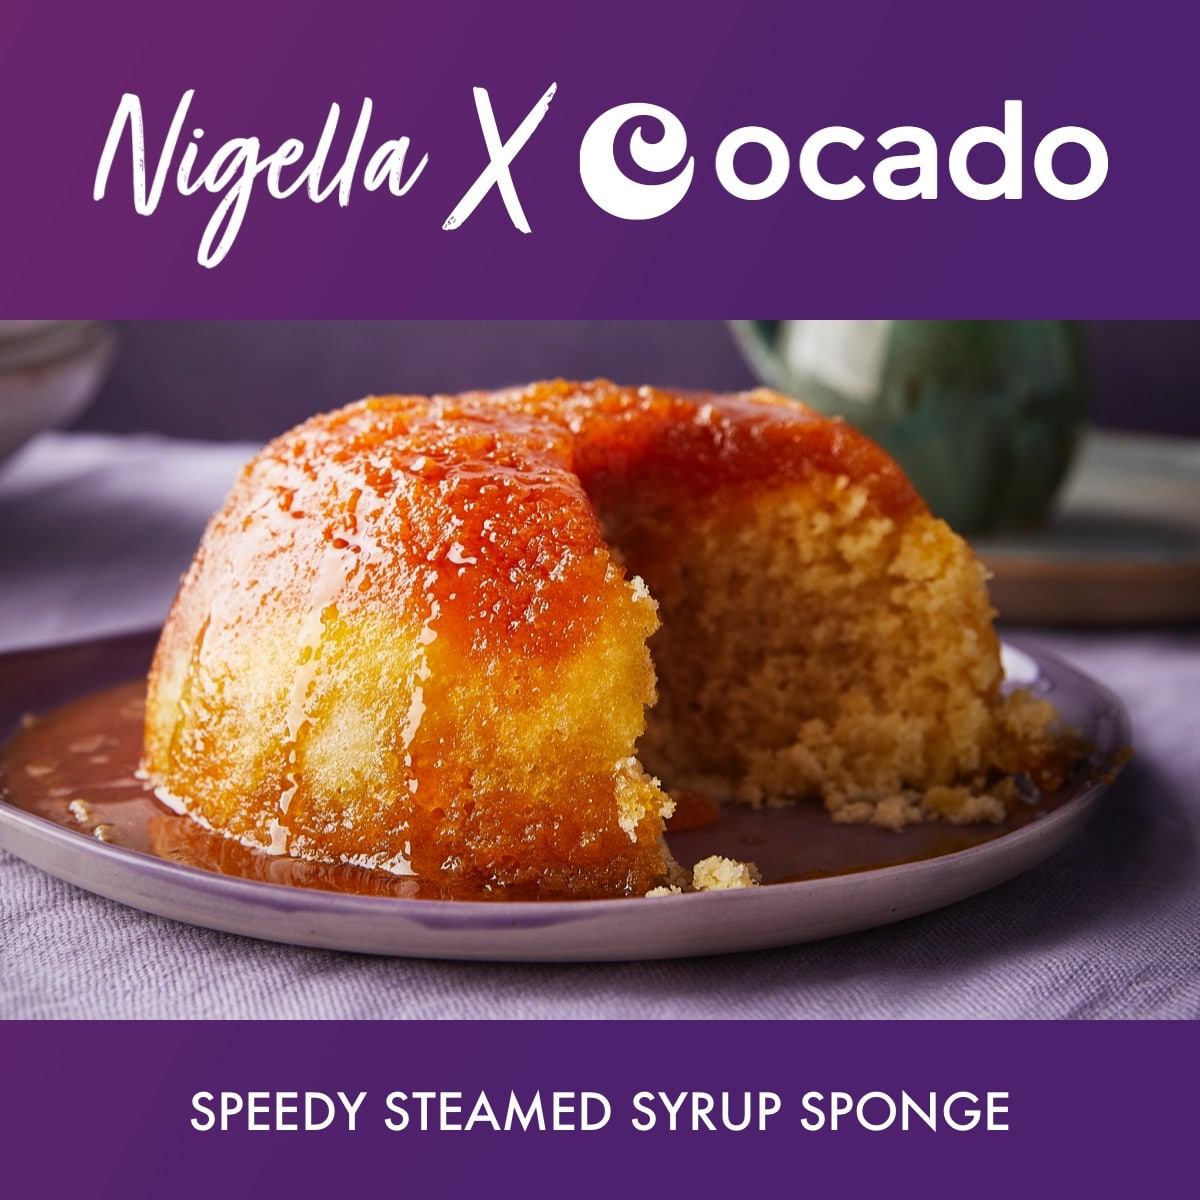 Speedy Steamed Syrup Sponge